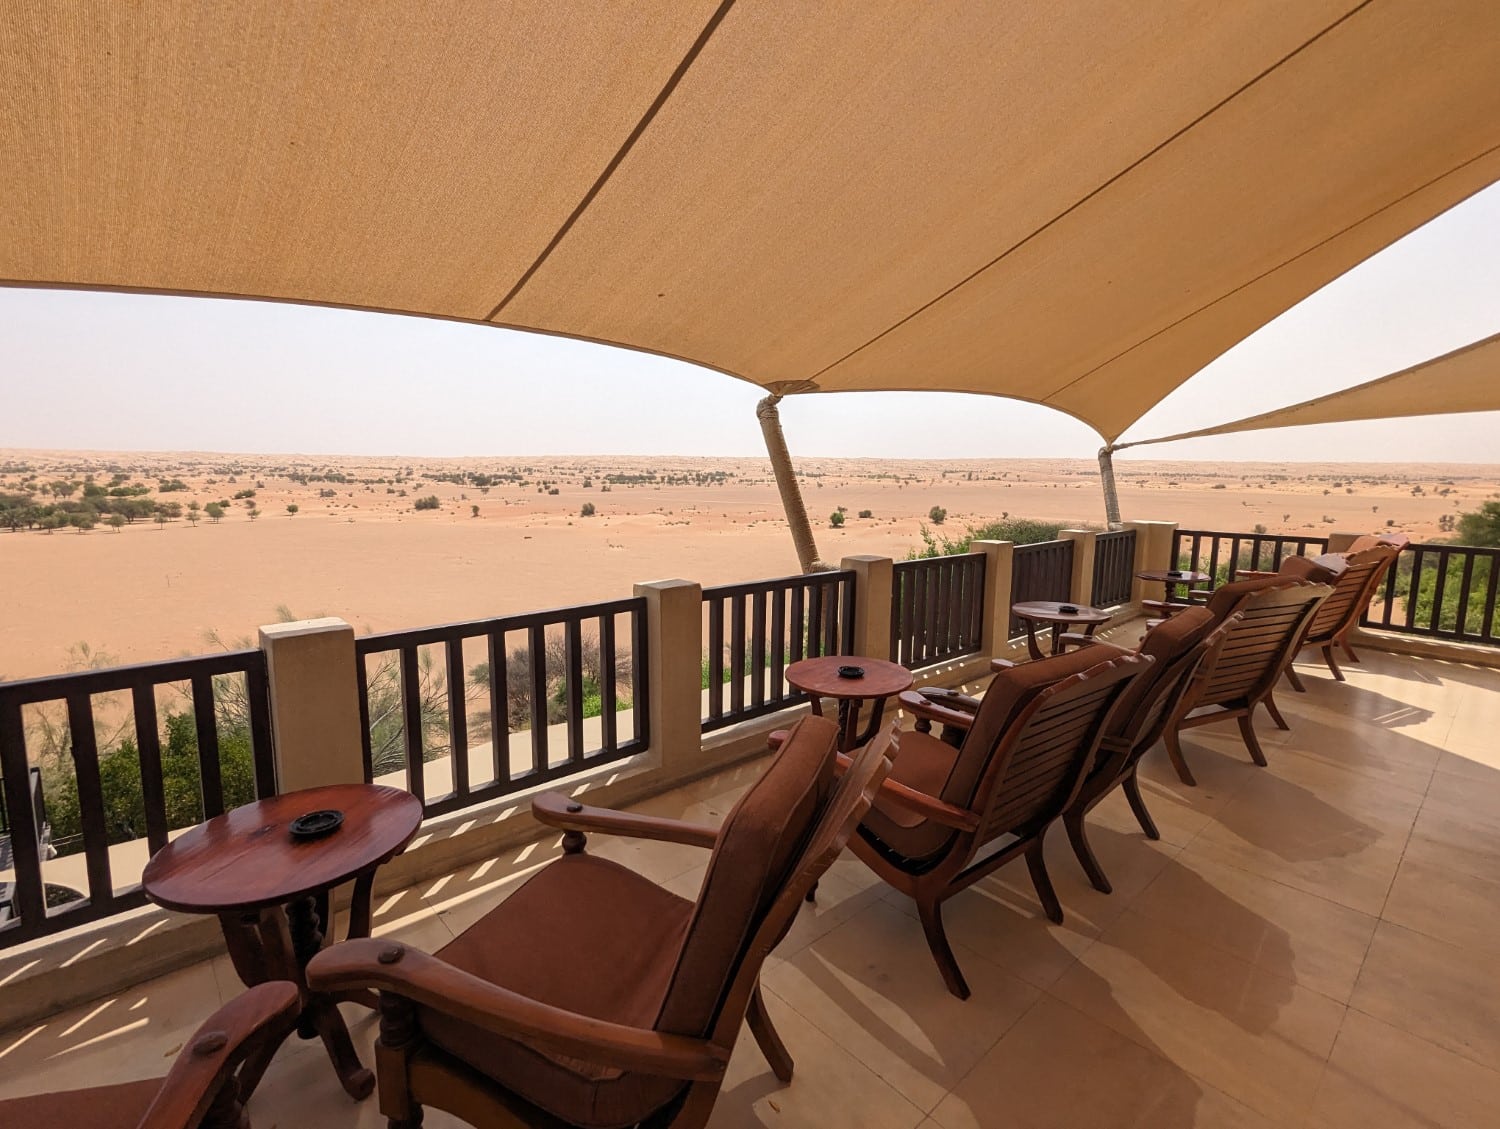 Outdoor patio at Hajar Terrace Bar, Al Maha resort in Dubai.